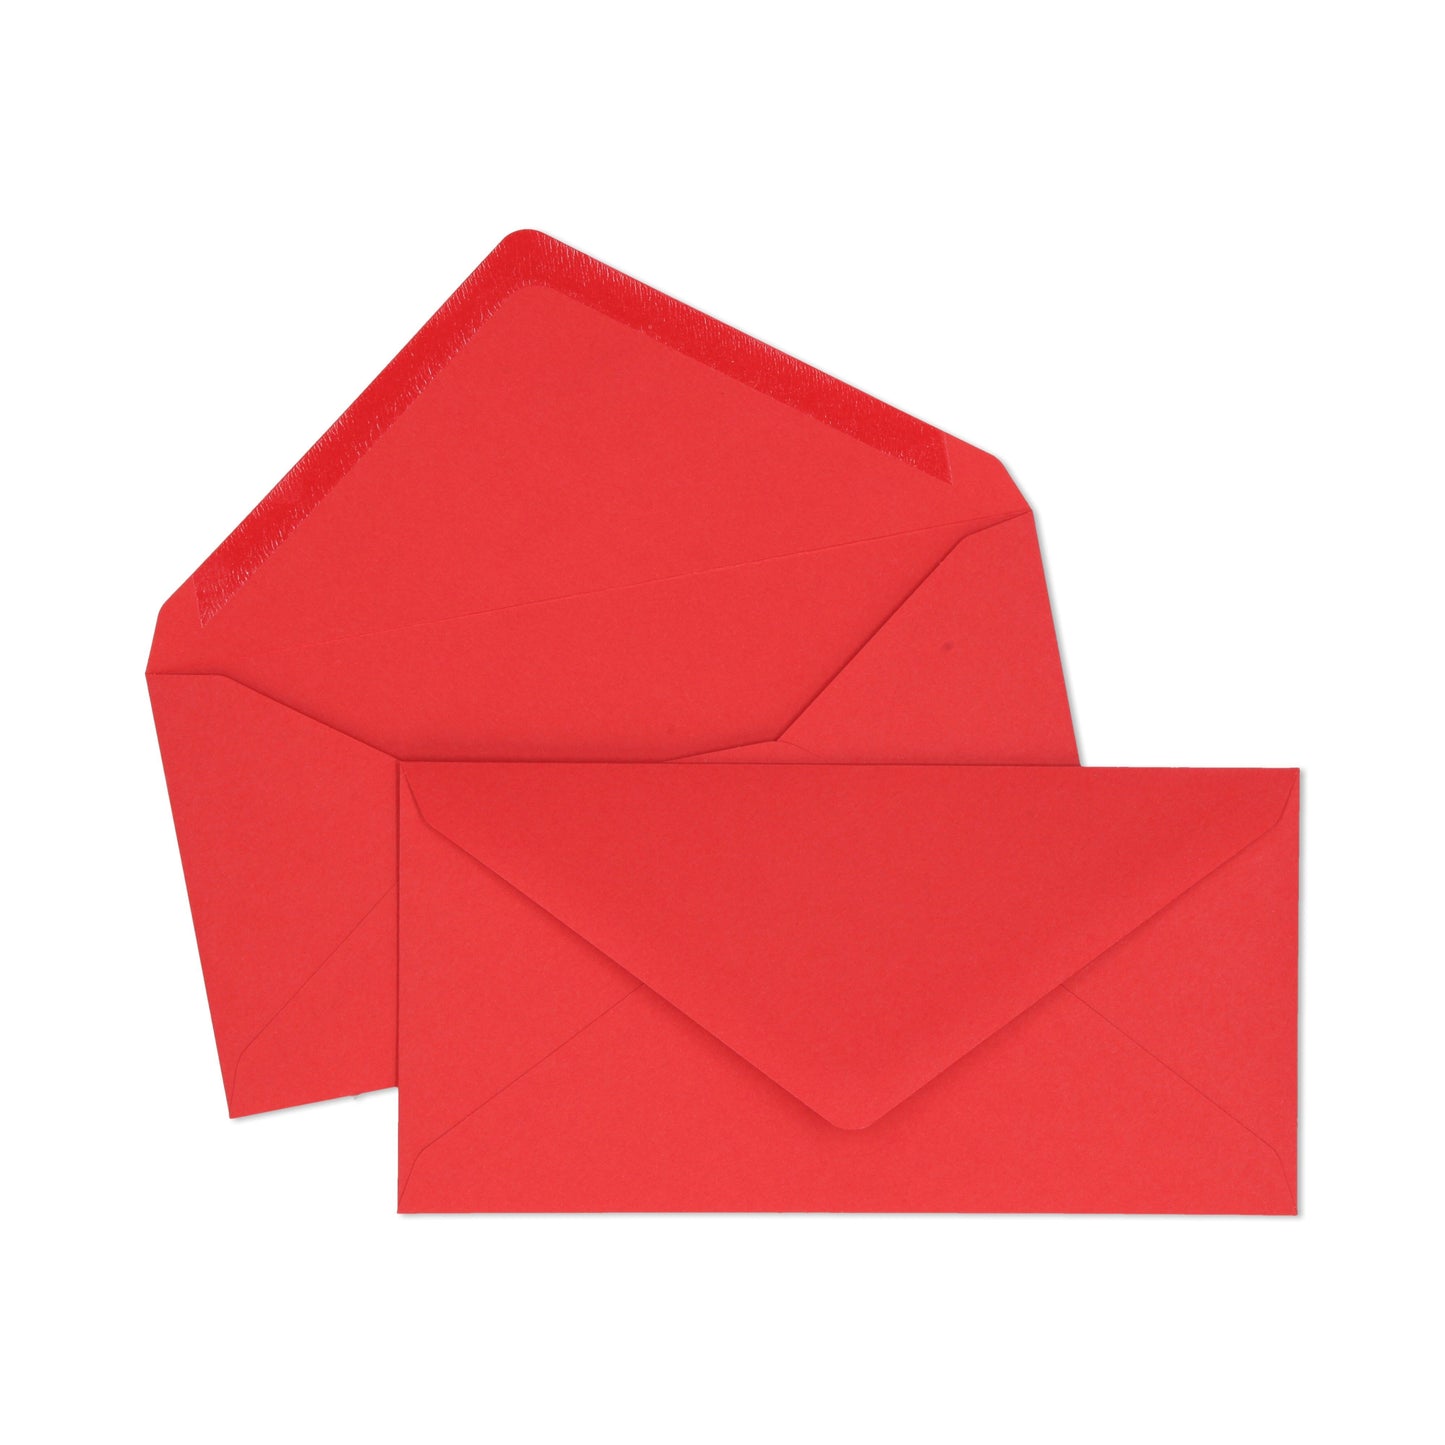 Red DL Envelope - 10 units